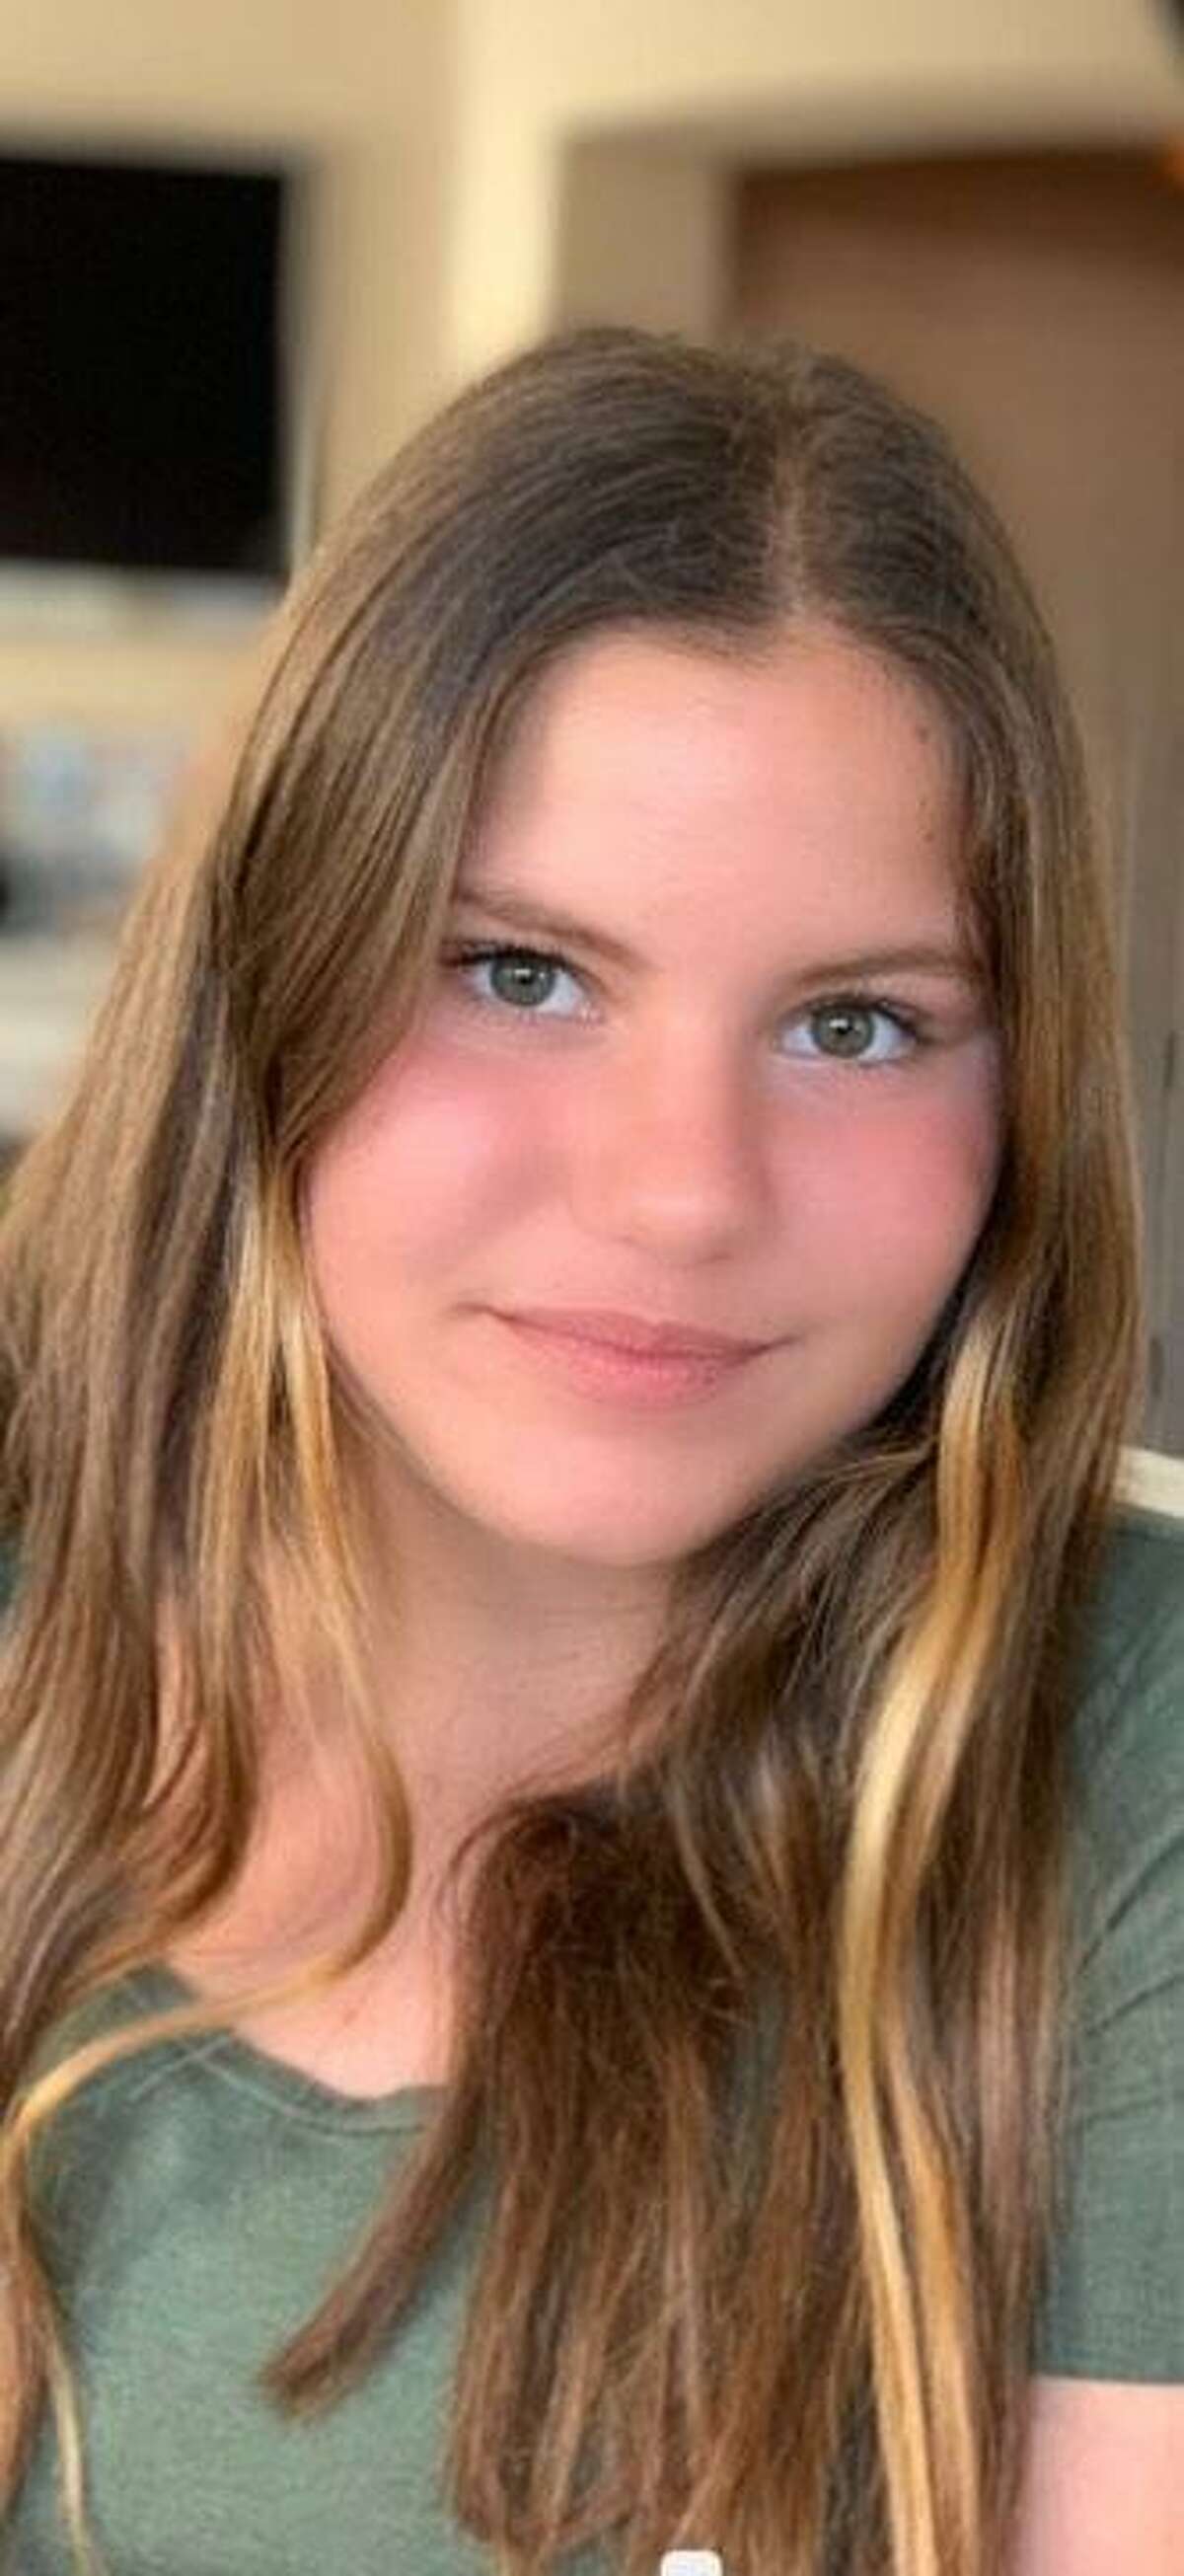 14岁的马德兰·科特娃在默塞德湖附近的约翰·缪尔大道上行走时被一辆汽车撞倒，在旧金山总医院死亡。